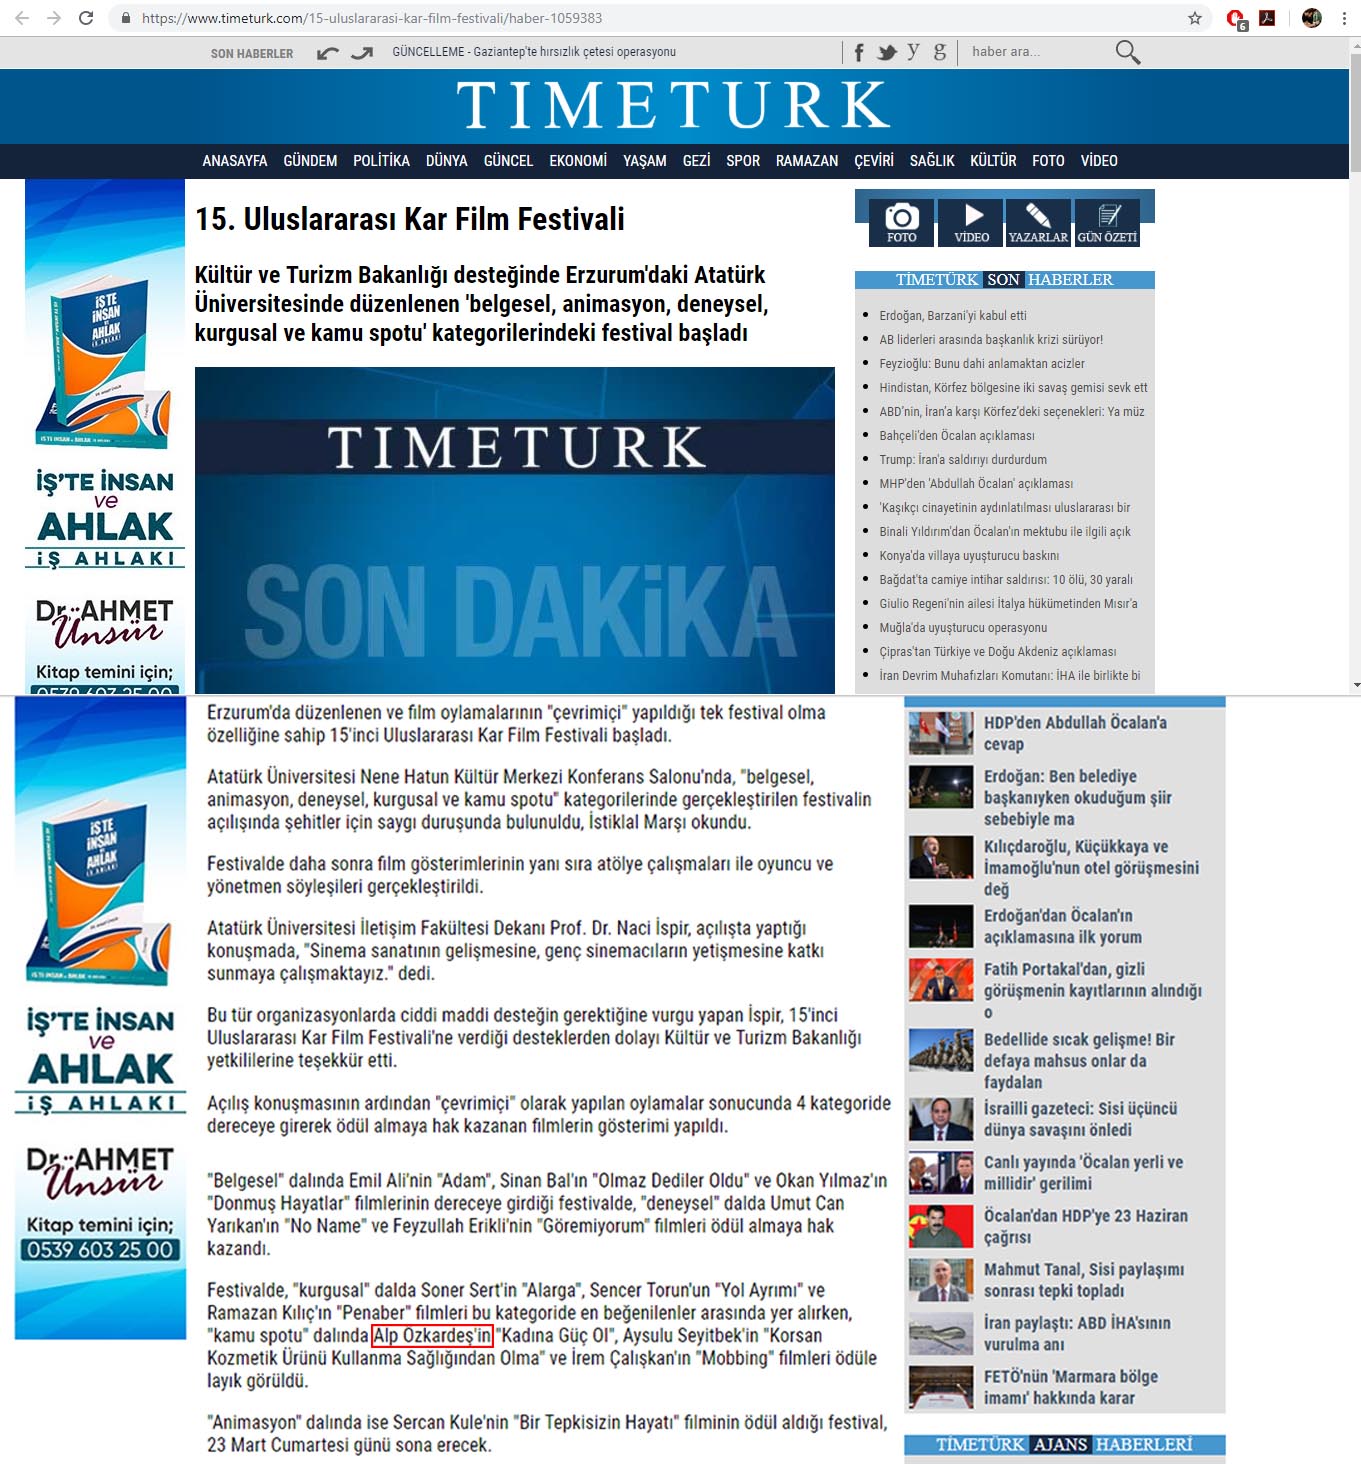 timeturk.com haberi.